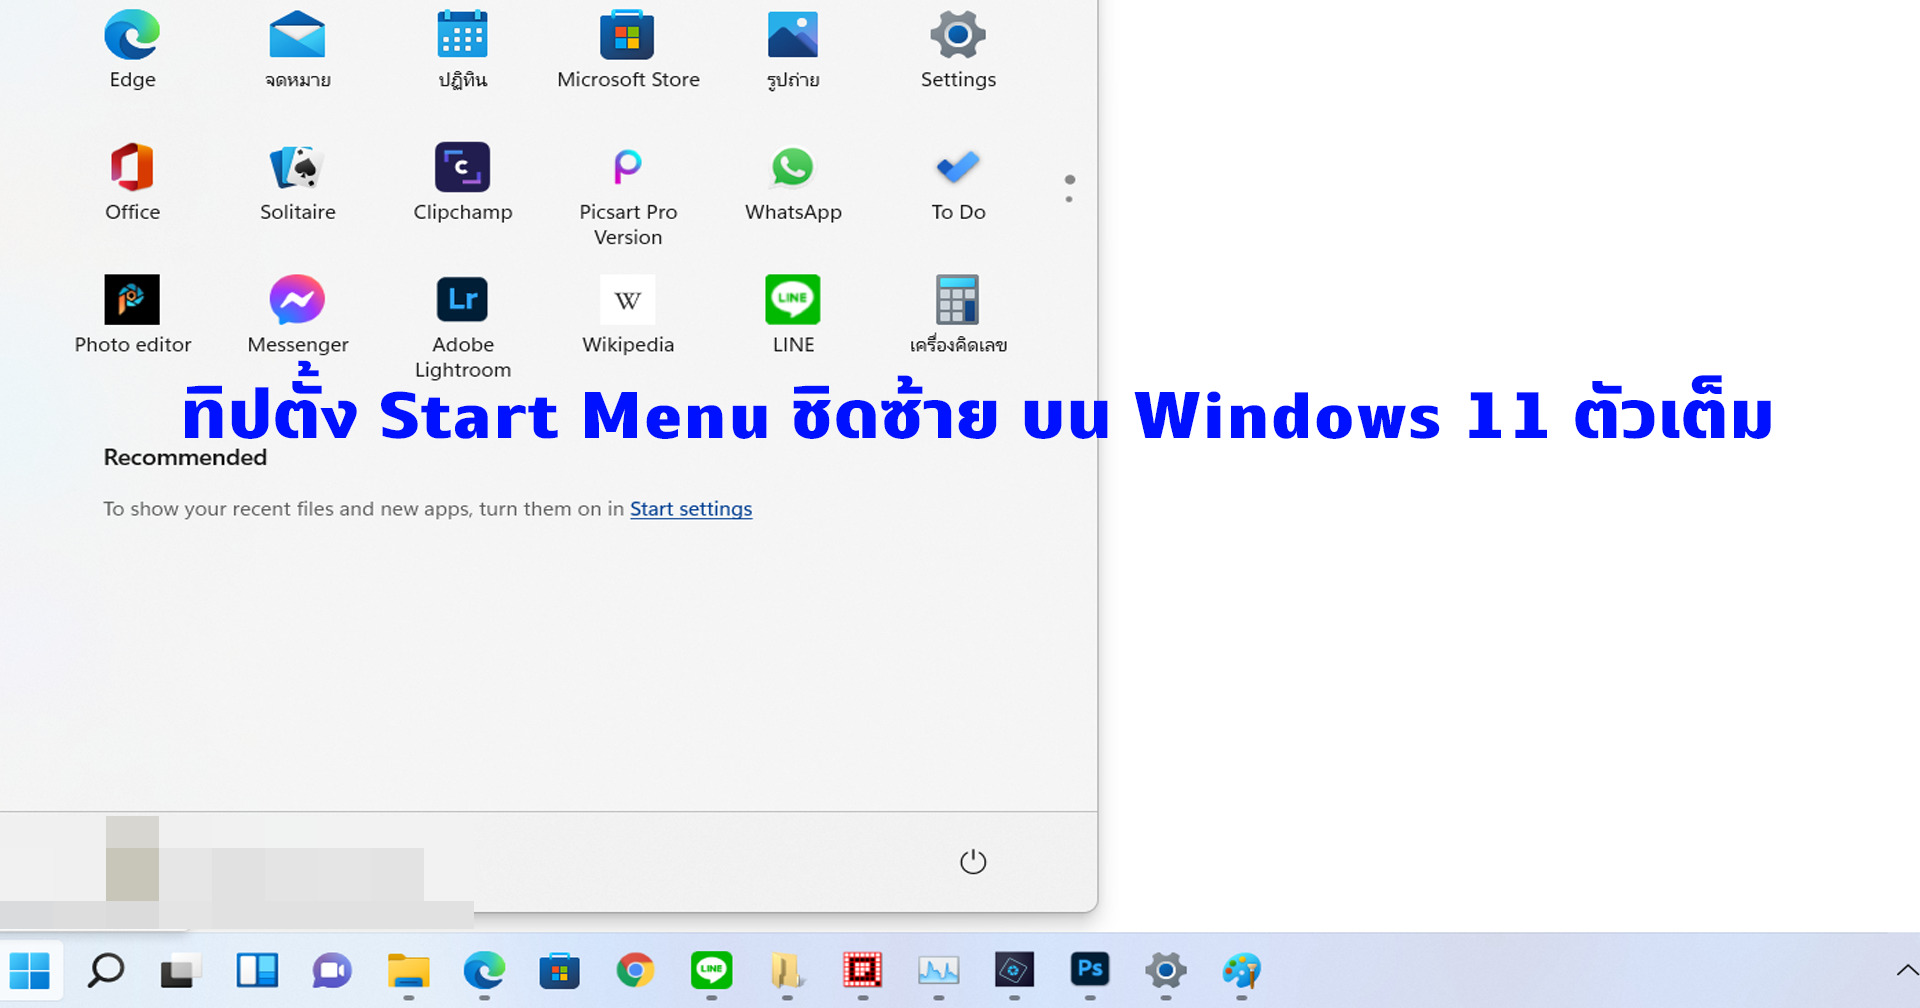 ทิป: วิธีตั้ง Start Menu ของ Windows 11 ชิดซ้าย (ฉบับเวอร์ชันตัวเต็ม)